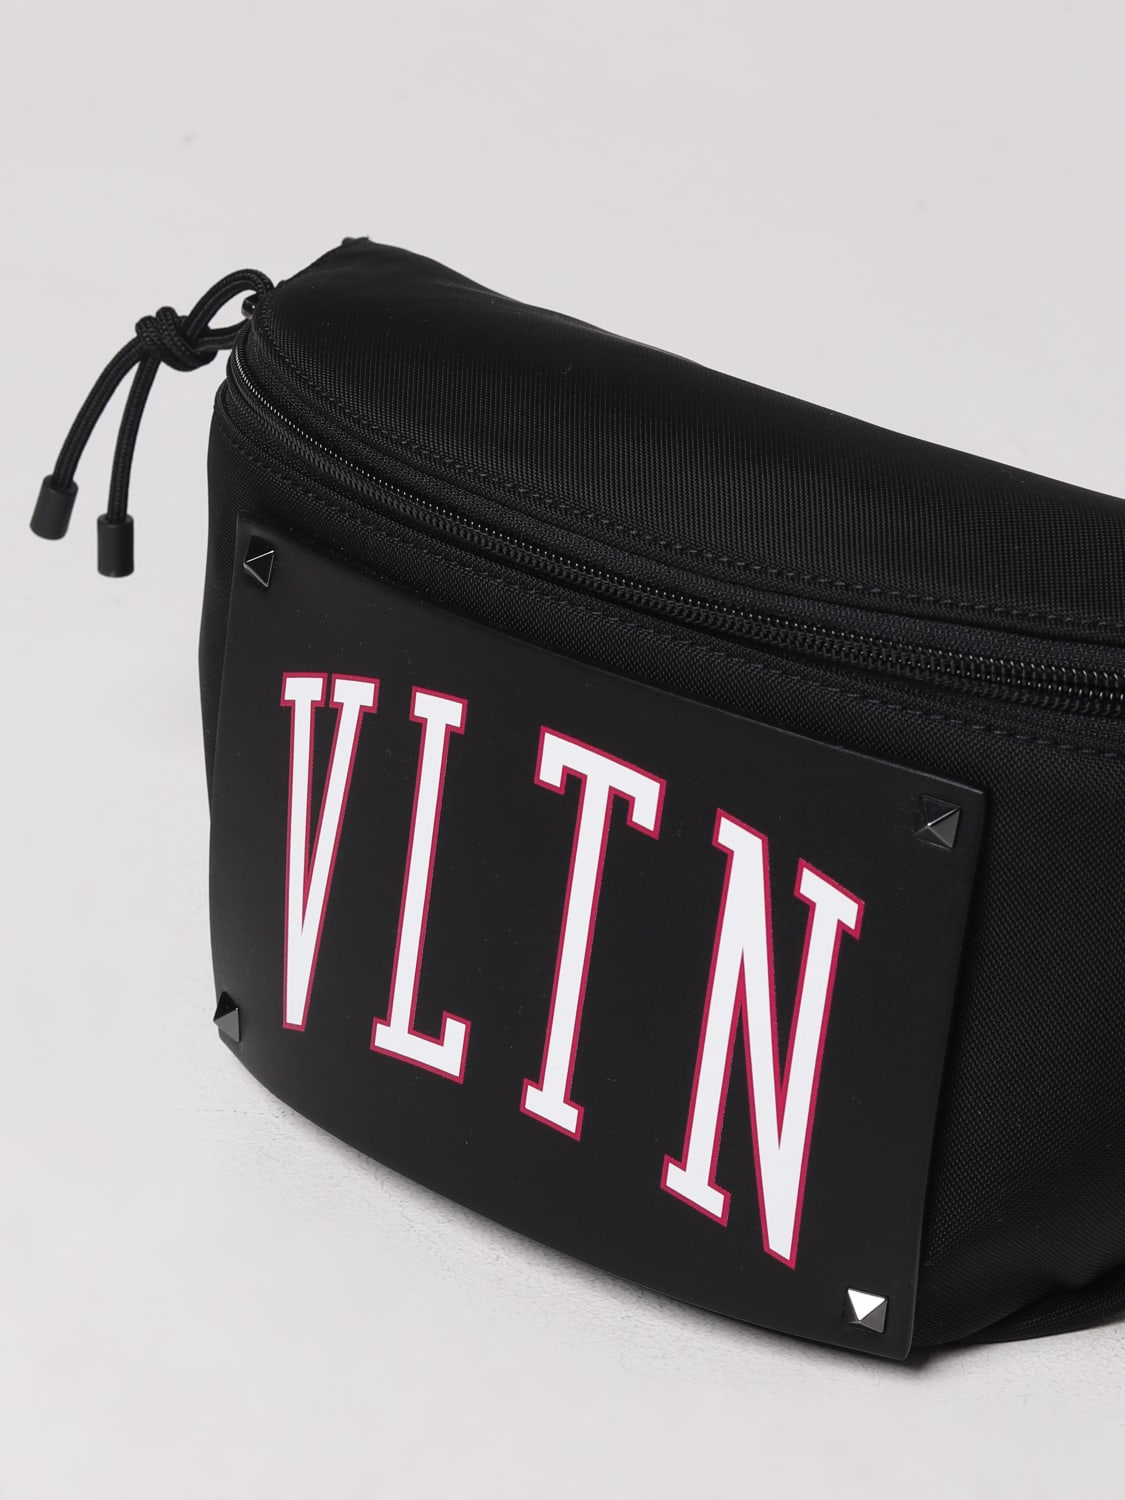 Valentino Garavani Men's Logo-Front Leather Belt Bag/Fanny Pack